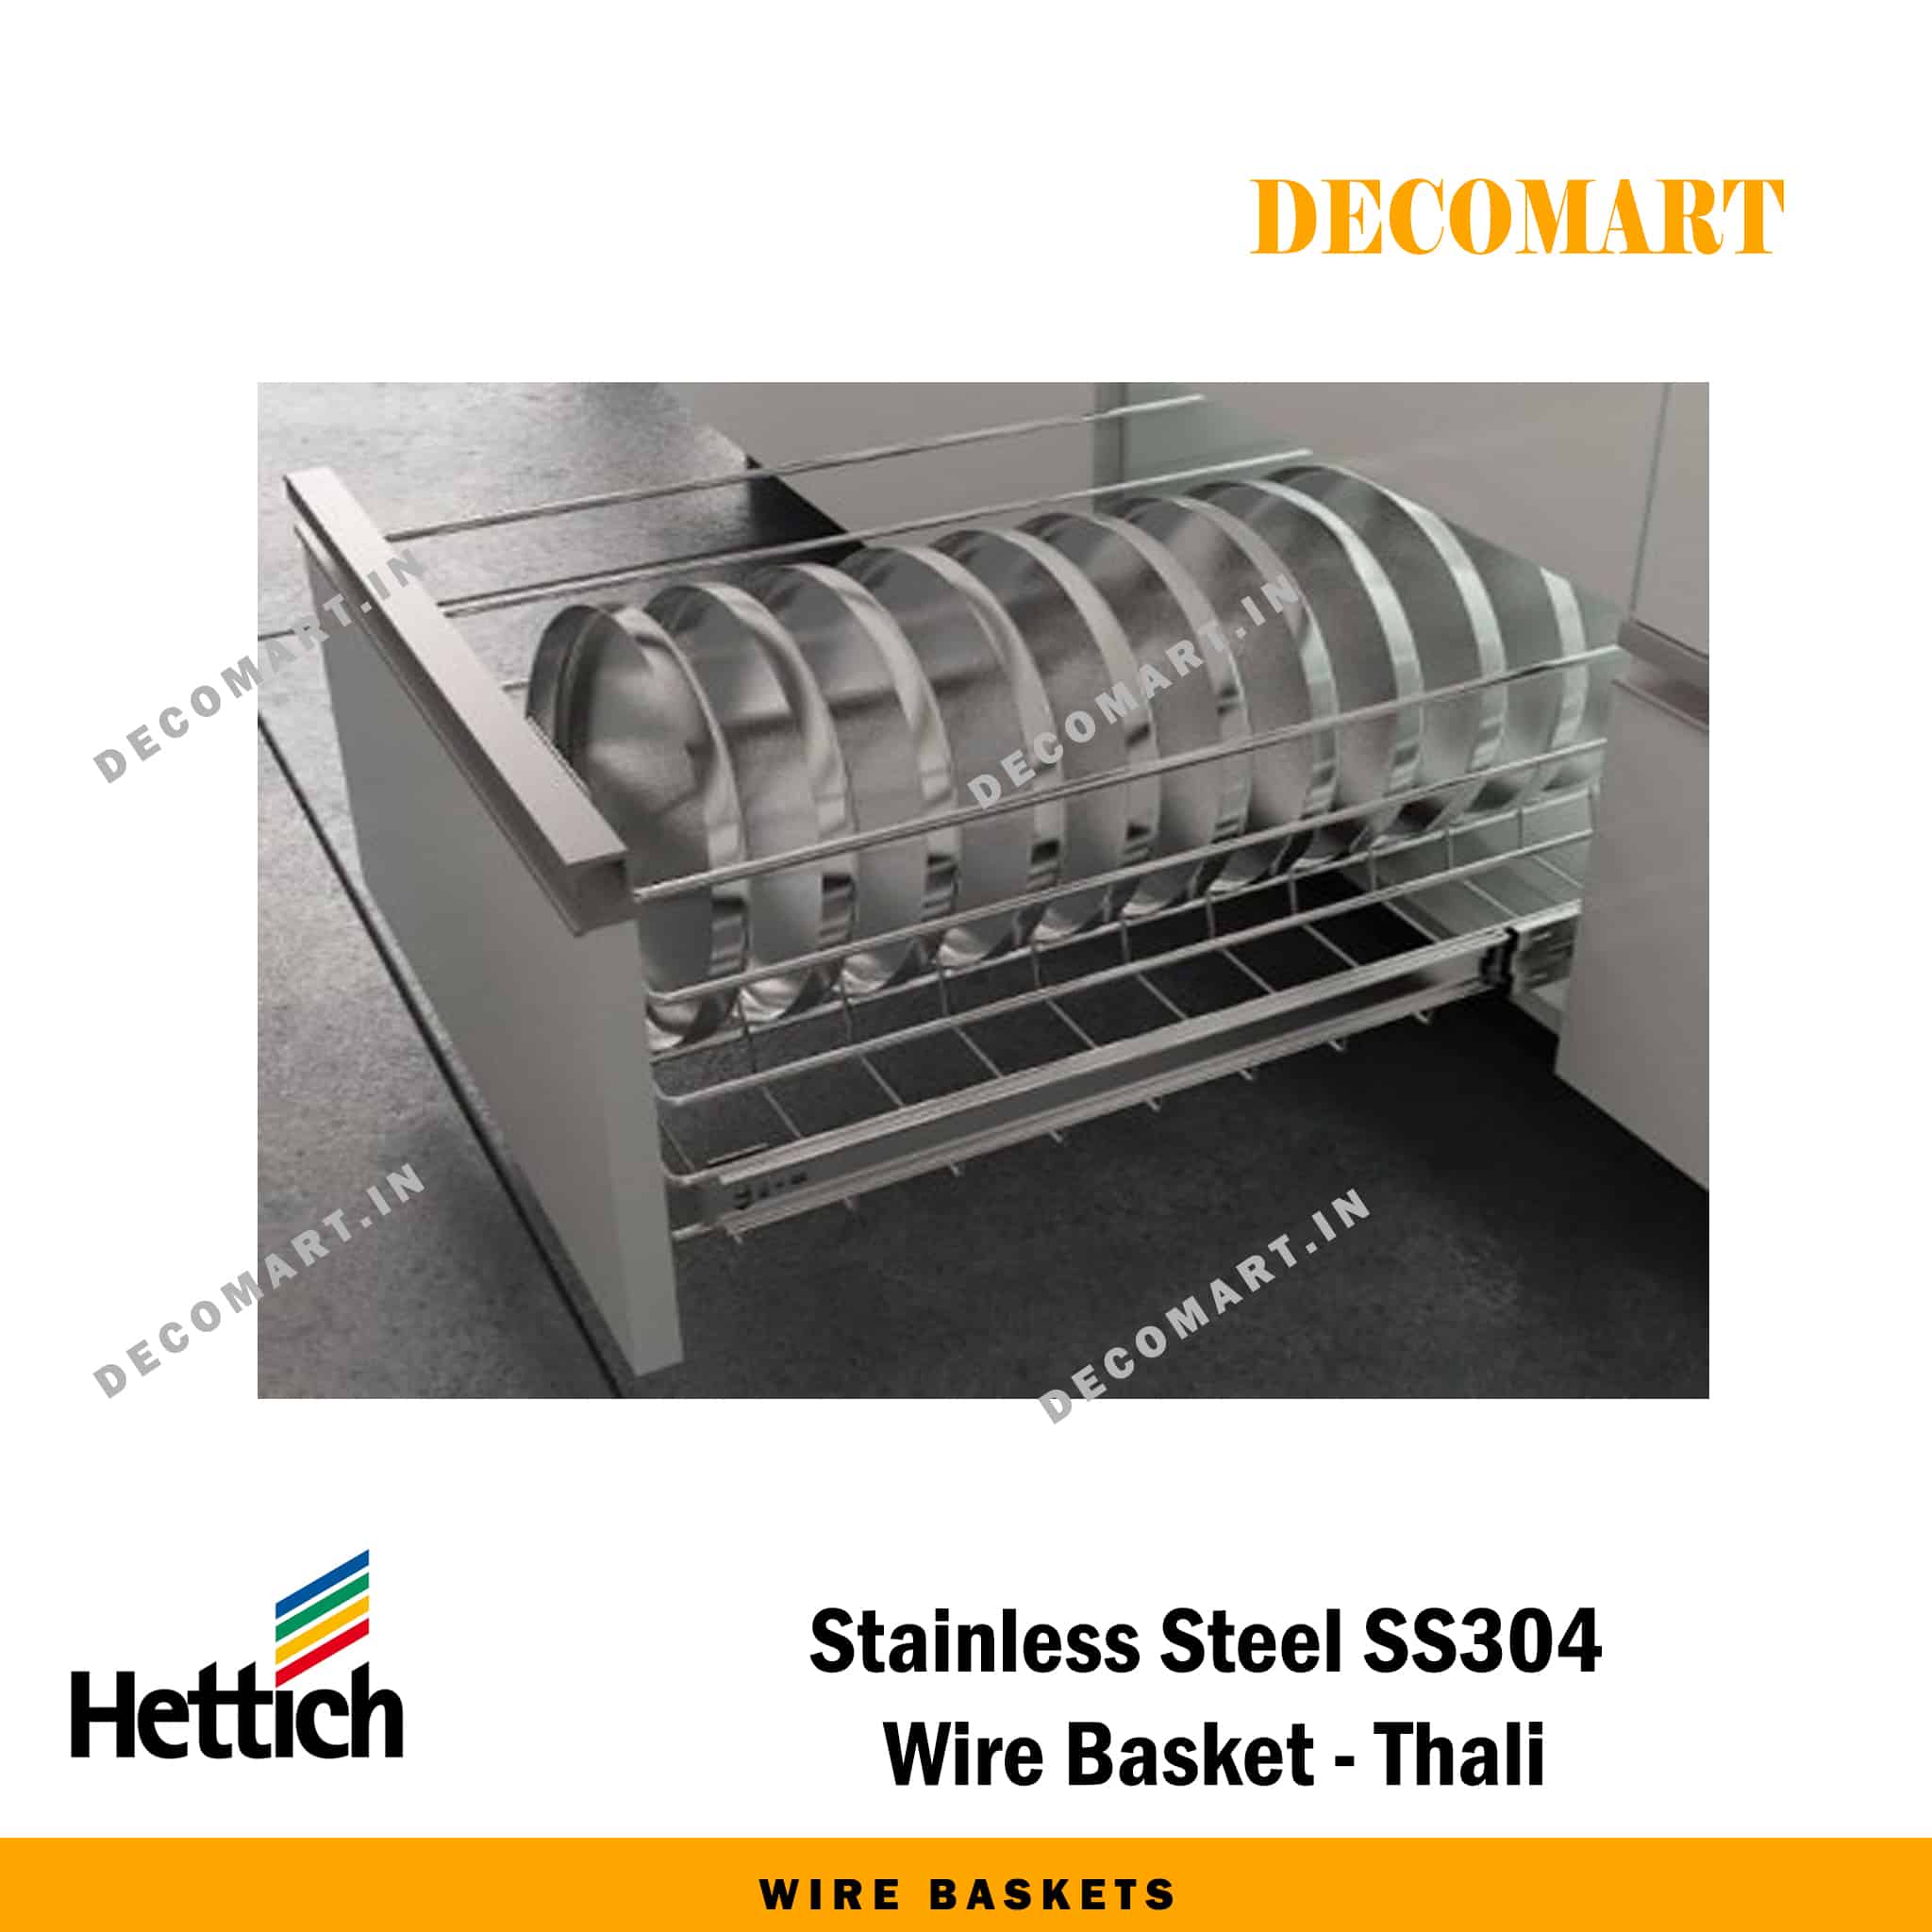 Hettich Wire Baskets - 33 Inch